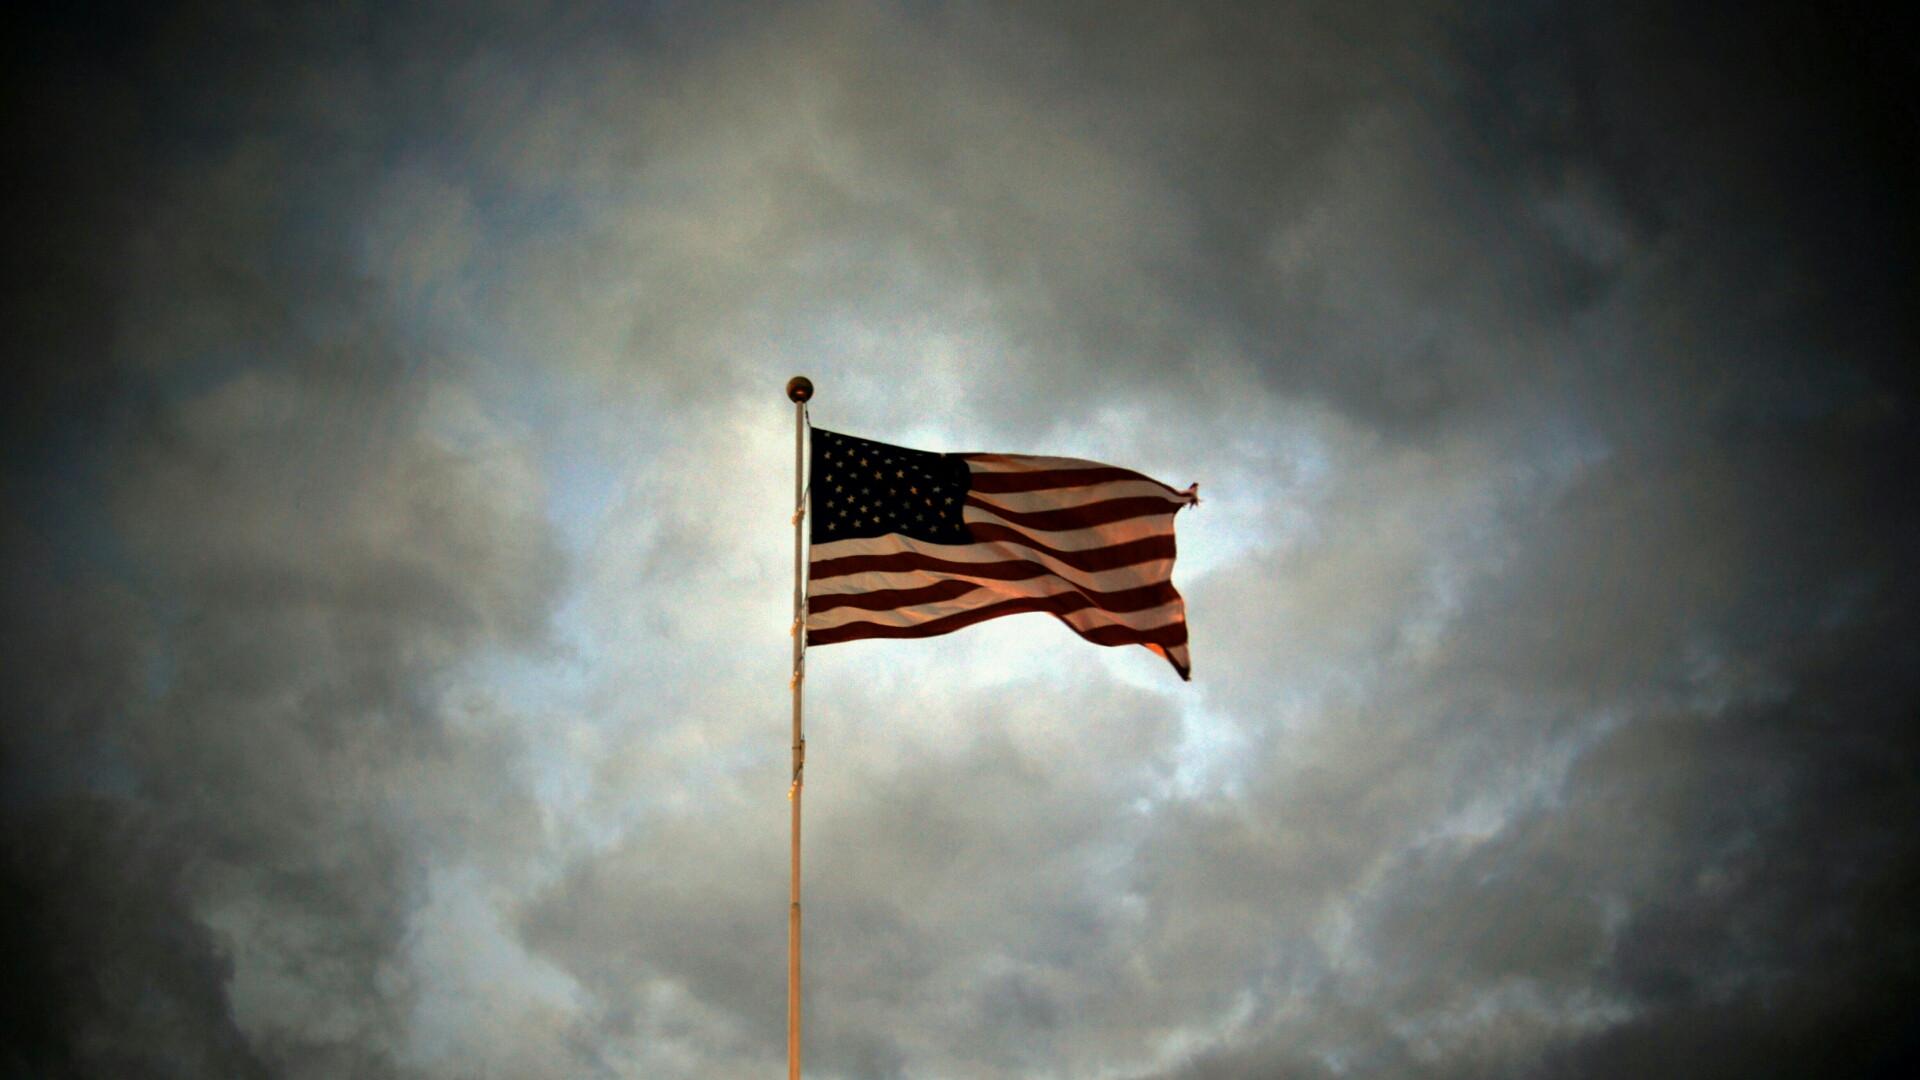 american flag background image 1 wallpaper desktop image download